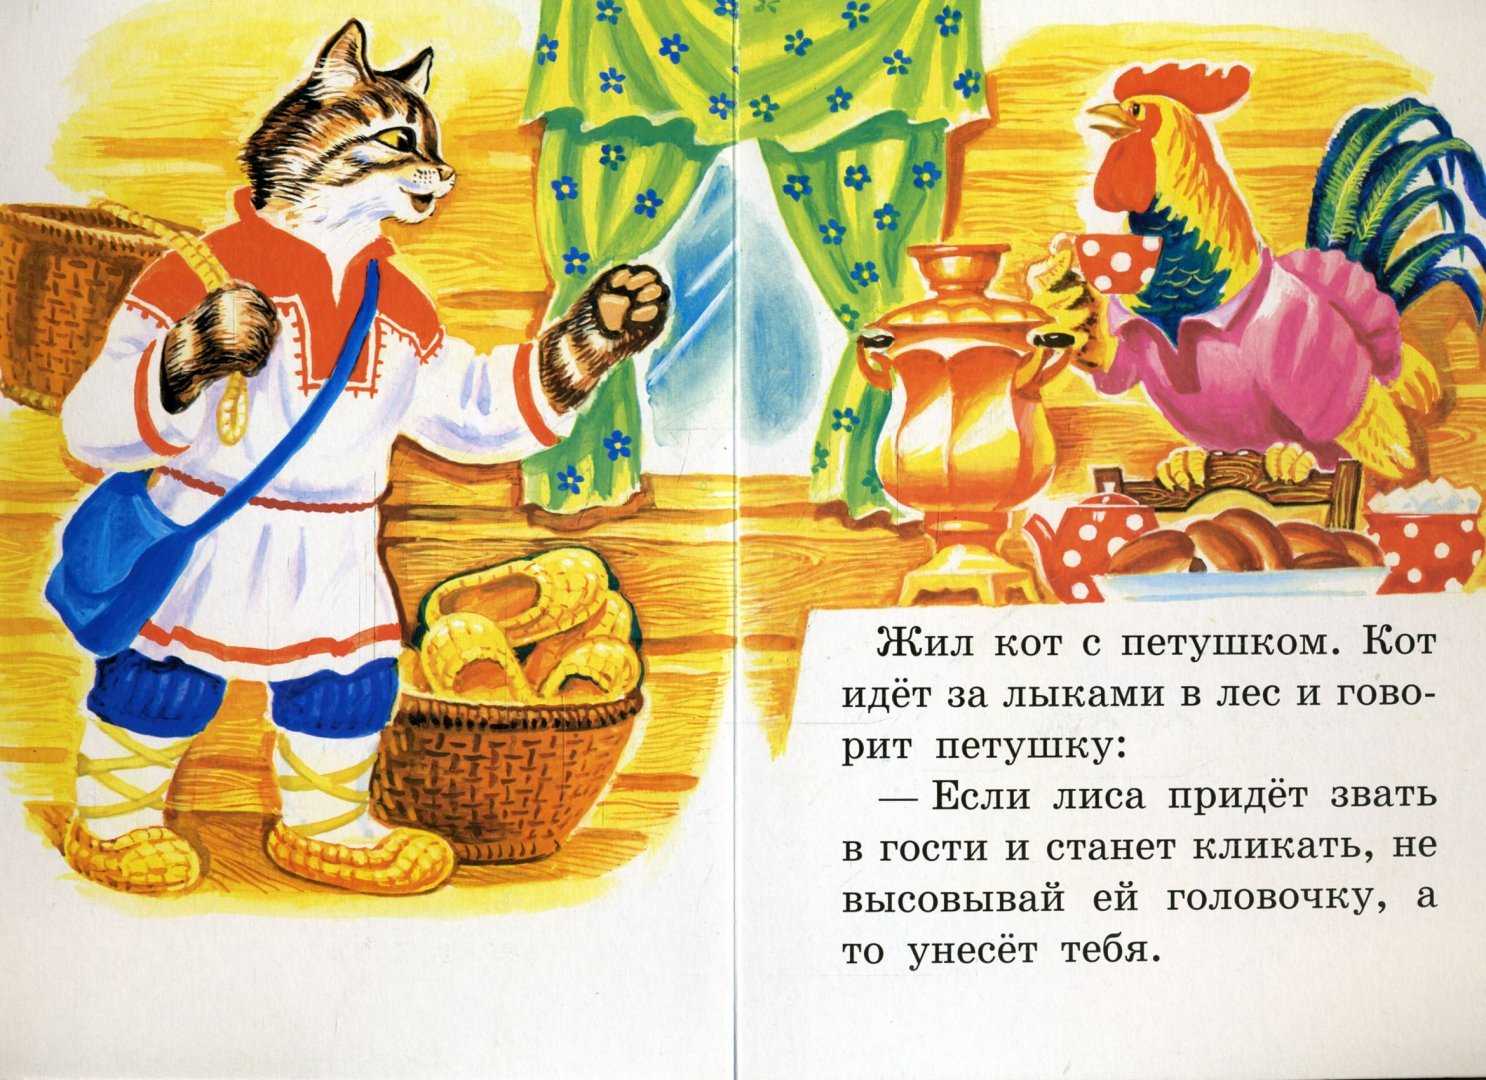 Петушок золотой гребешок русская народная сказка читать онлайн текст